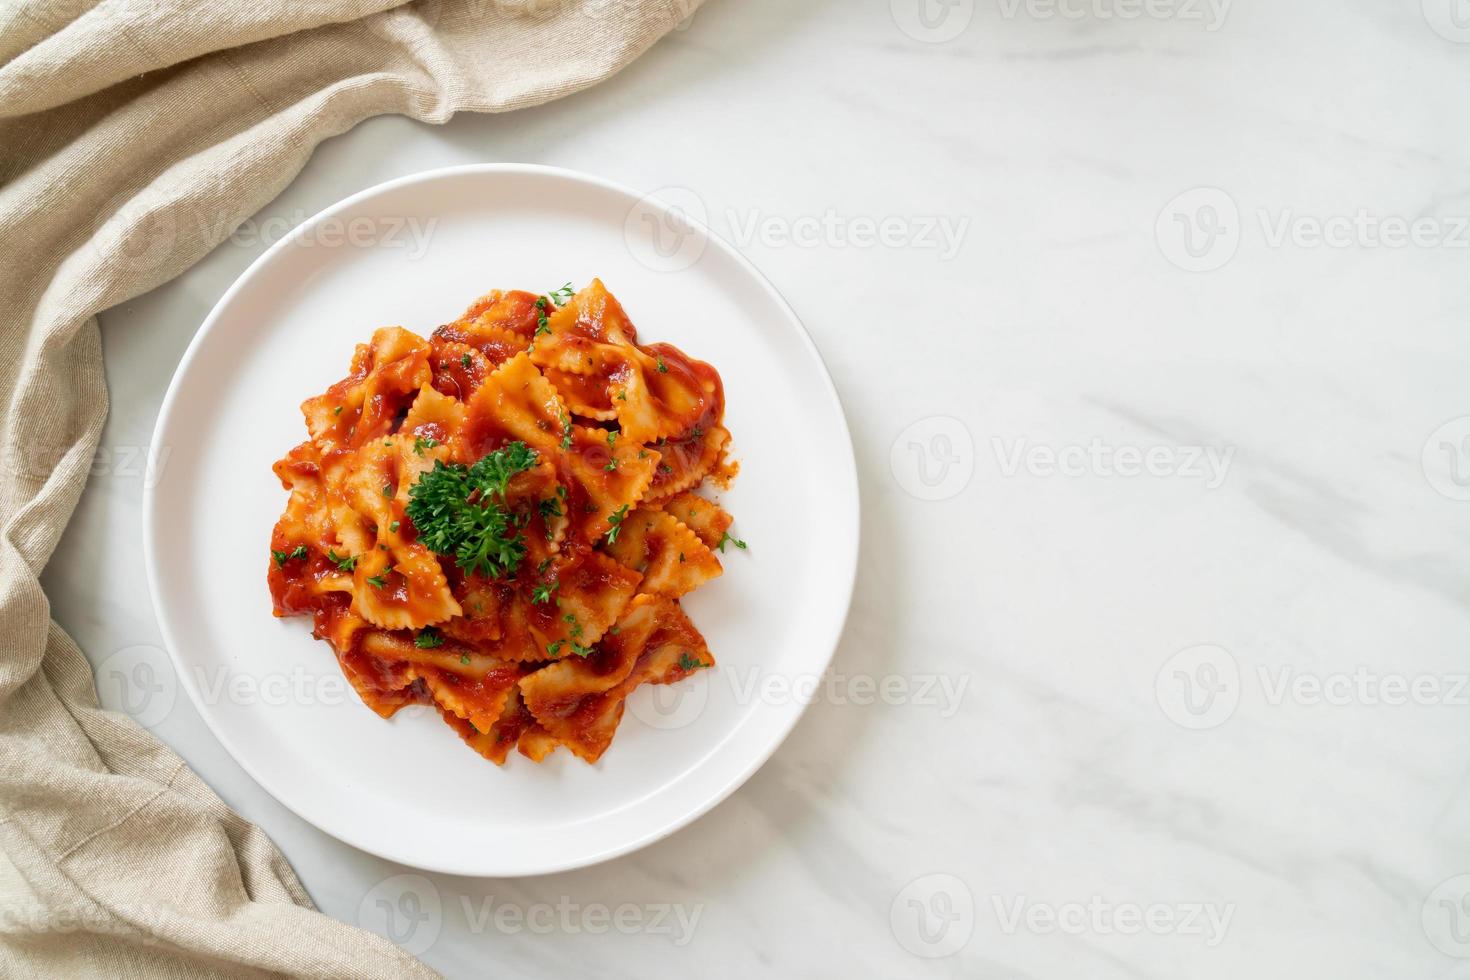 macarrão farfalle em molho de tomate com salsa - comida italiana foto